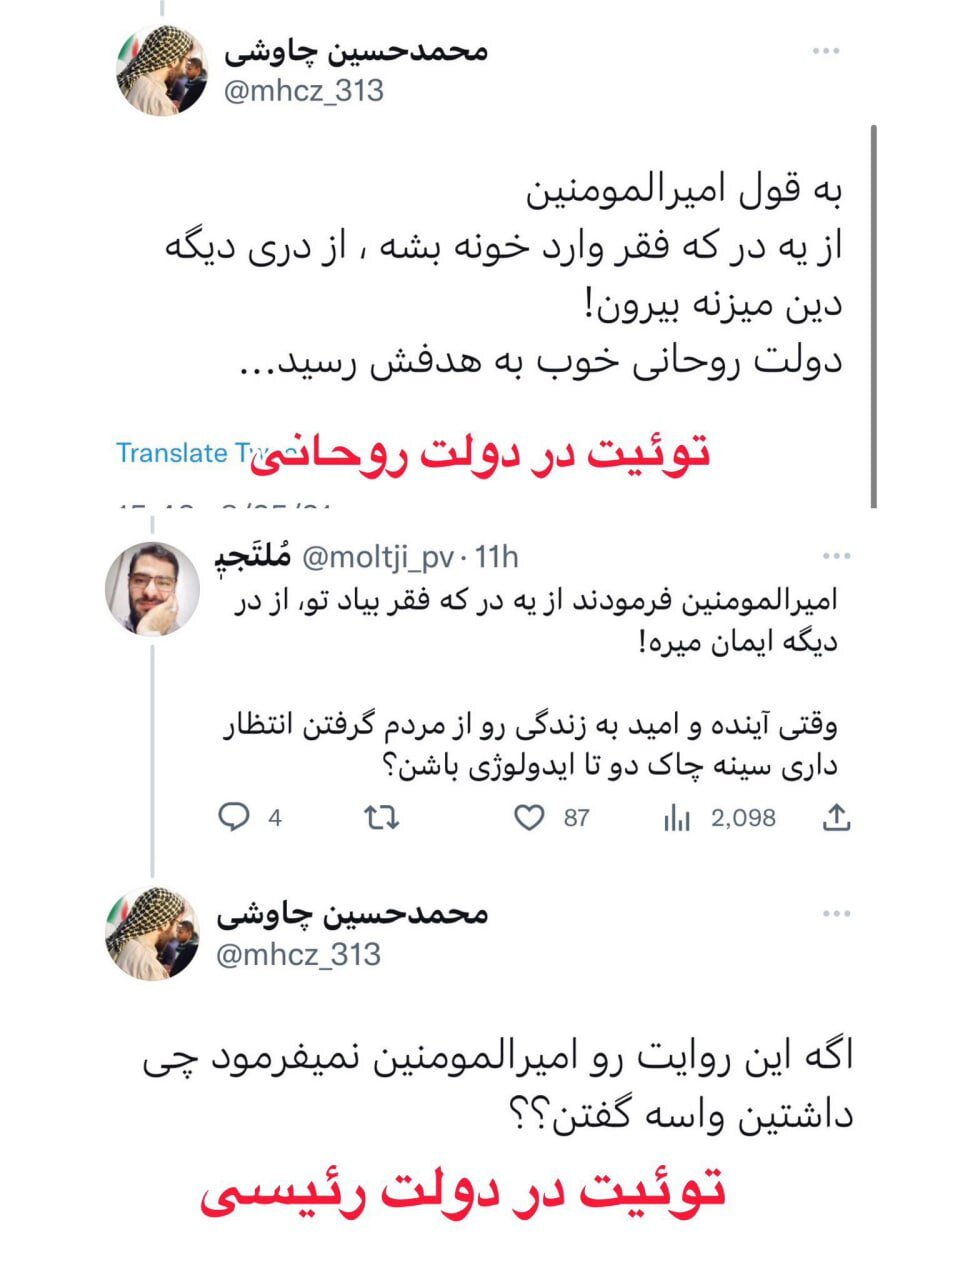 توییت دوگانه در دولت روحانی و رییسی